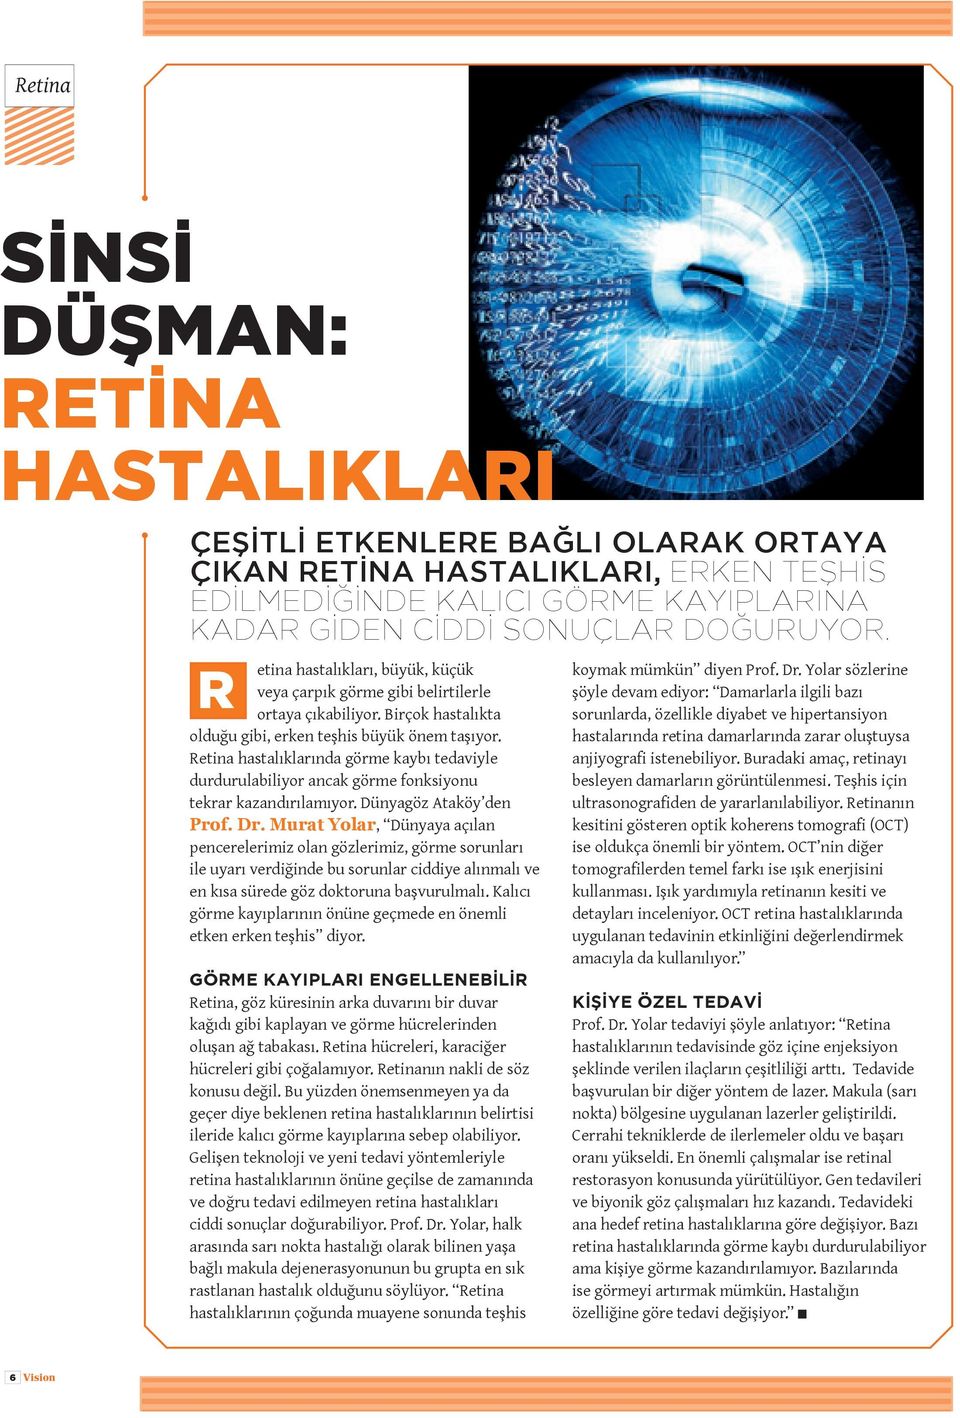 Retina hastalıklarında görme kaybı tedaviyle durdurulabiliyor ancak görme fonksiyonu tekrar kazandırılamıyor. Dünyagöz Ataköy den Prof. Dr.